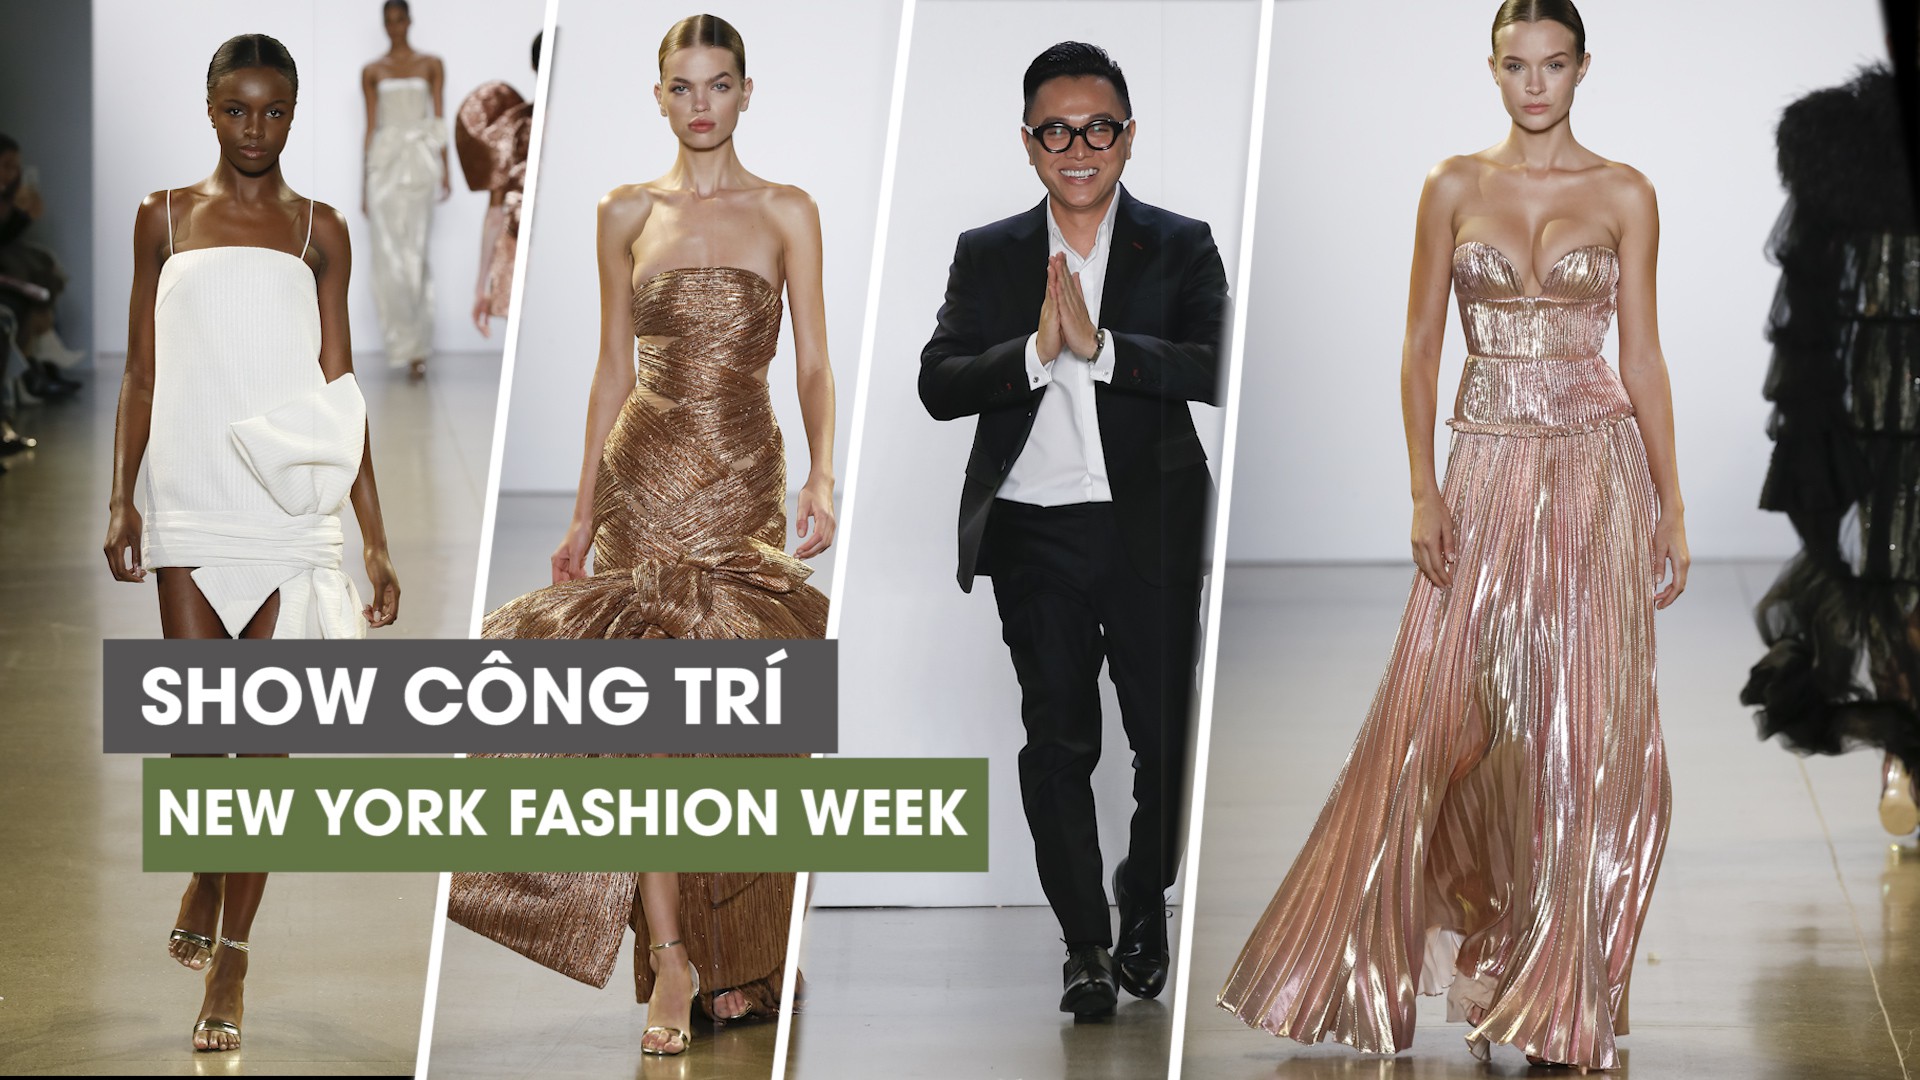 Nguyễn Công Trí: Bậc thầy thiết kế mang thời trang Việt vươn tầm thế giới 5